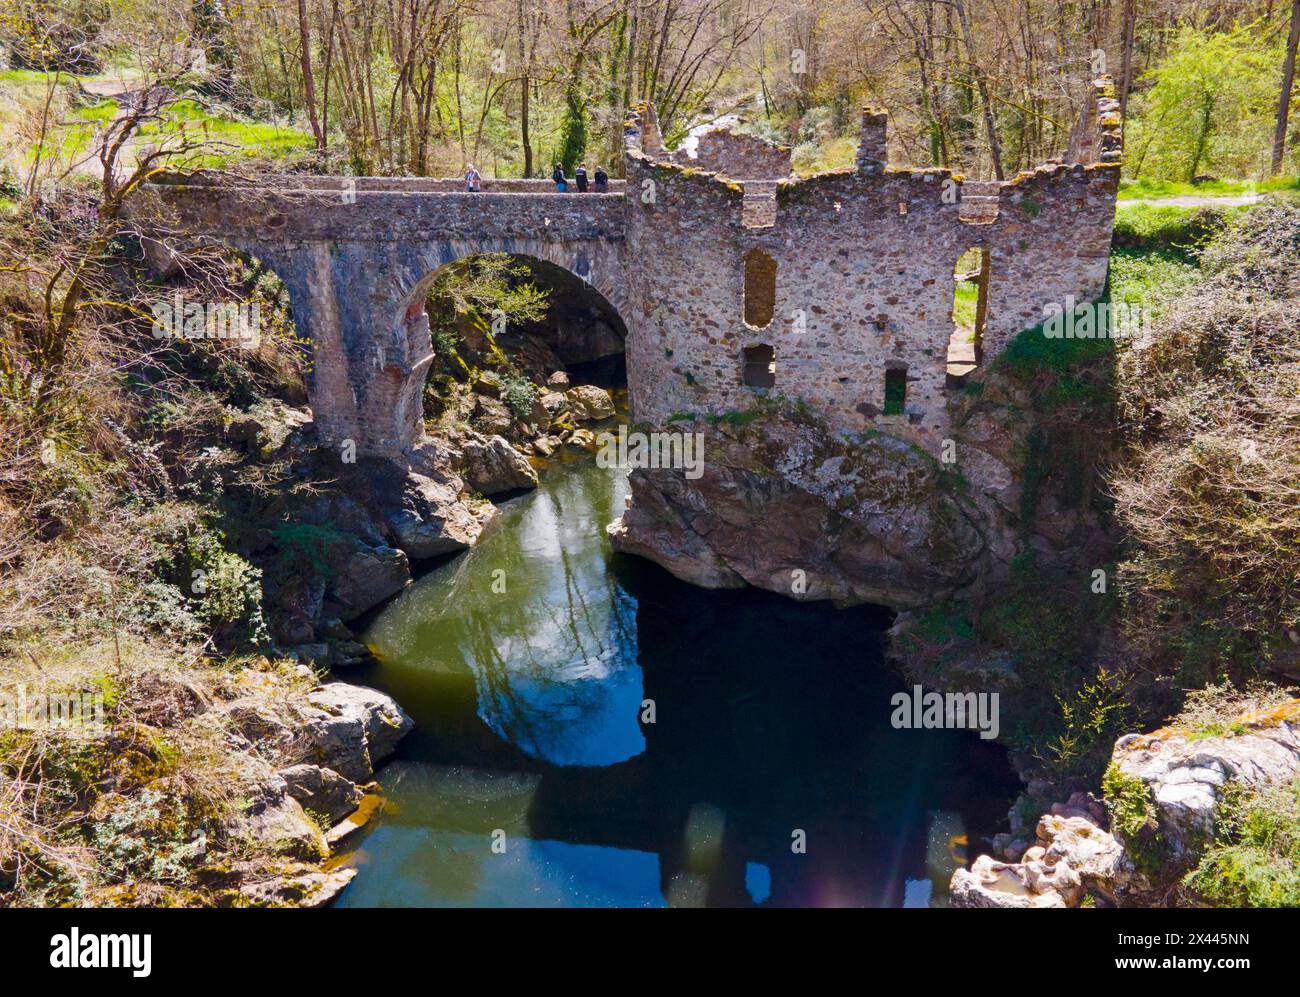 Vecchio ponte in pietra parzialmente distrutto su un fiume, circondato da vegetazione lussureggiante, Ponte del Diavolo, Pont de Diable, Ponte in pietra romanica, Ariege Foto Stock